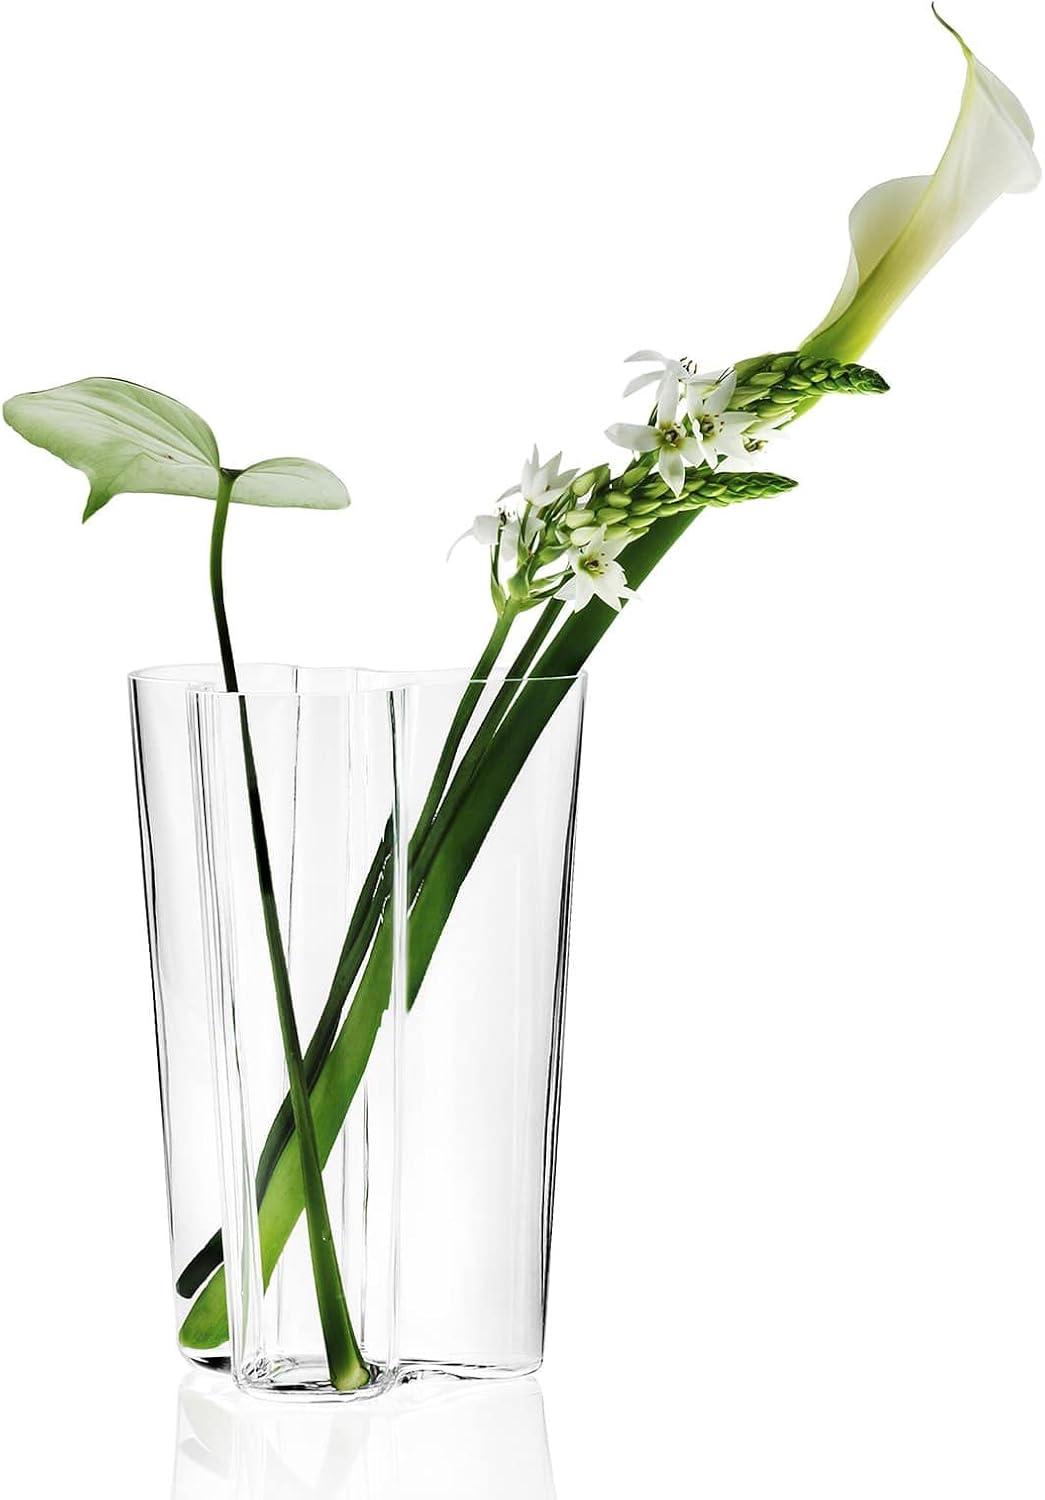 Eskimo Woman's Lederhosen Inspired Clear Glass Vase